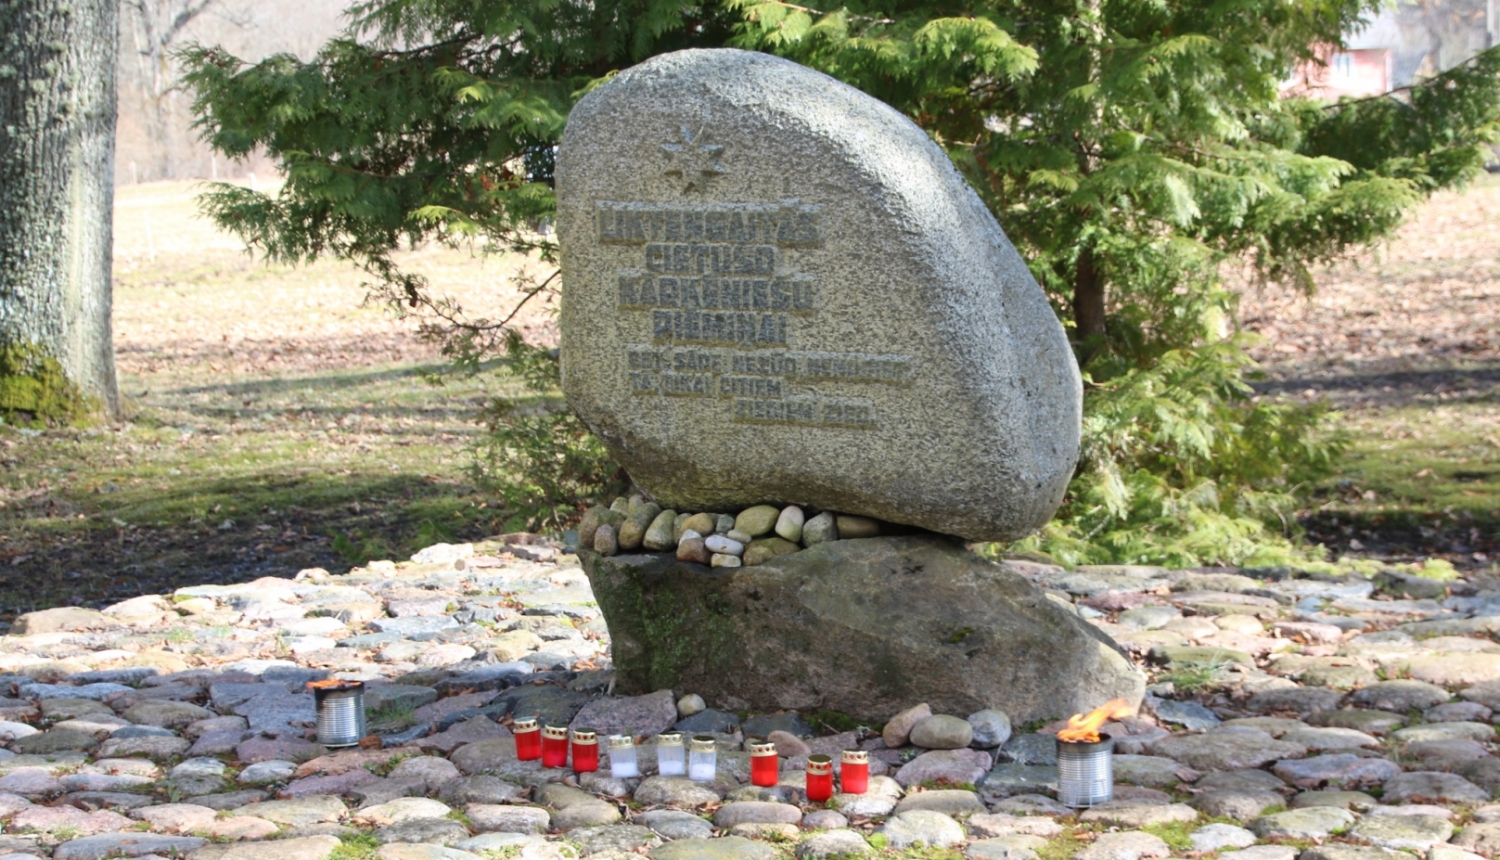 Piemiņas akmens Kārķos, kam apkārt saliktas sarkanbaltsarkanas piemiņas svecītes.